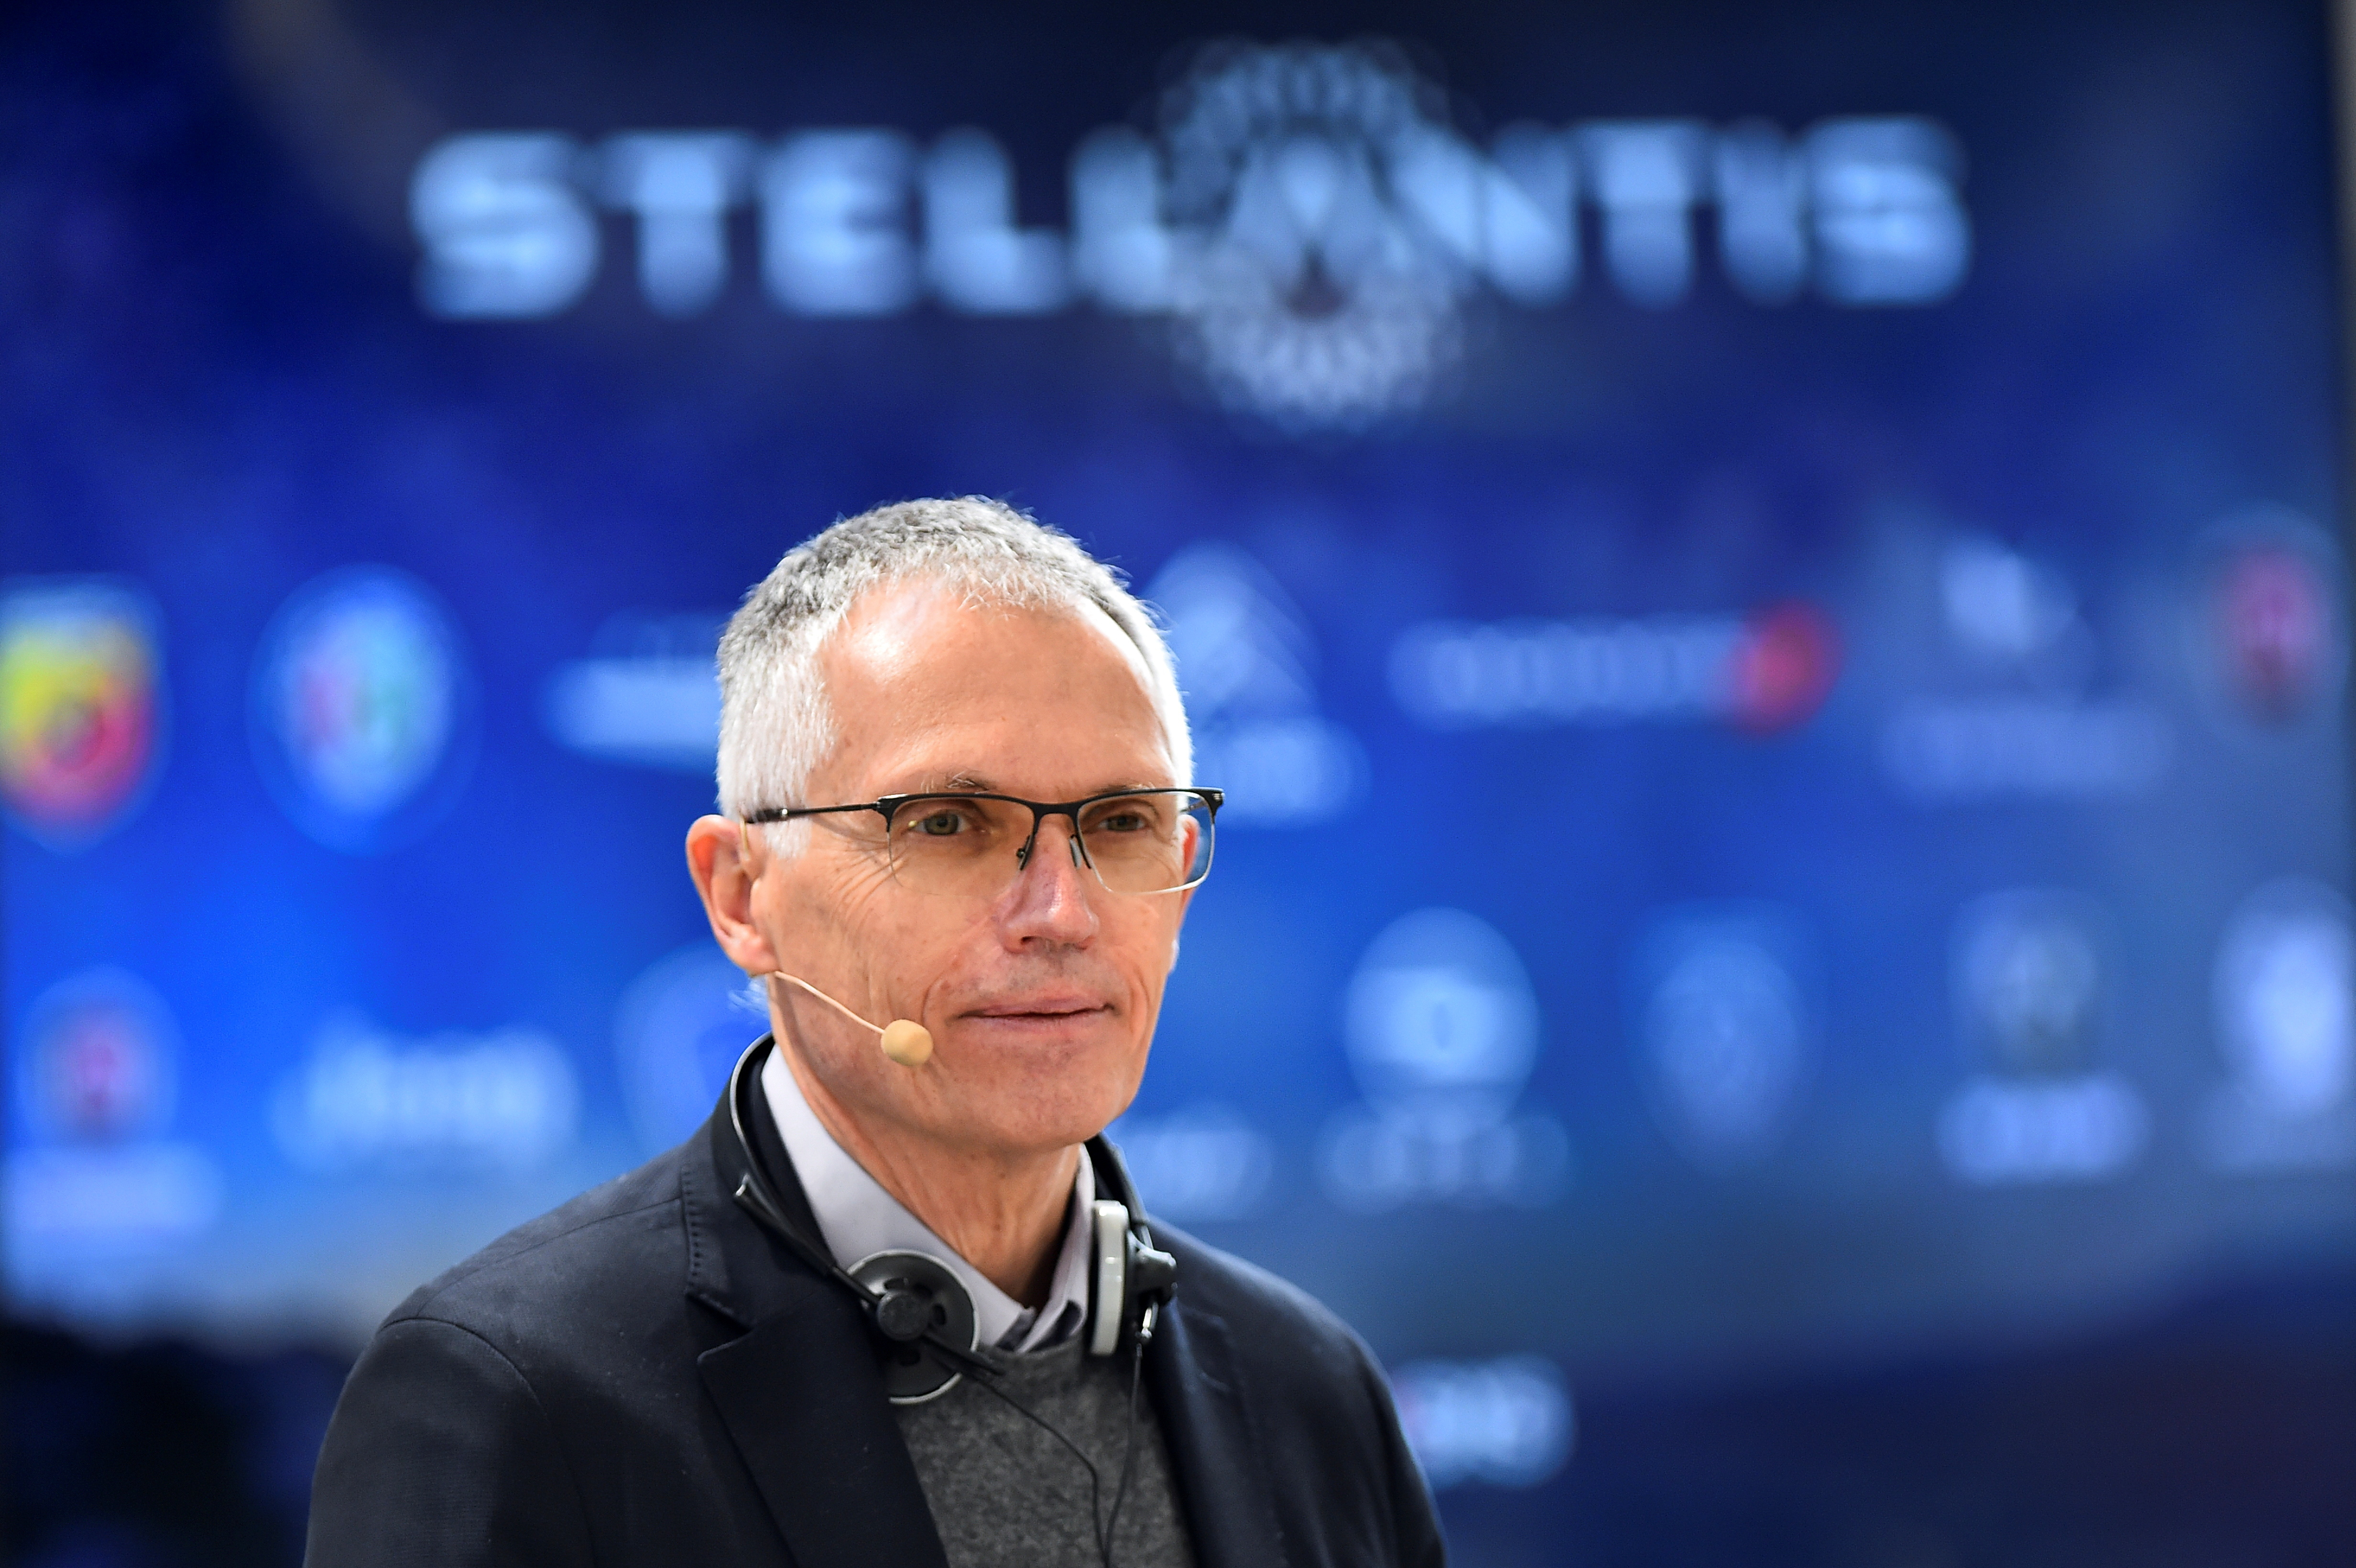 Stellantis investit 300 millions d'euros dans son usine du Maroc pour accélérer en Afrique et au Moyen-Orient